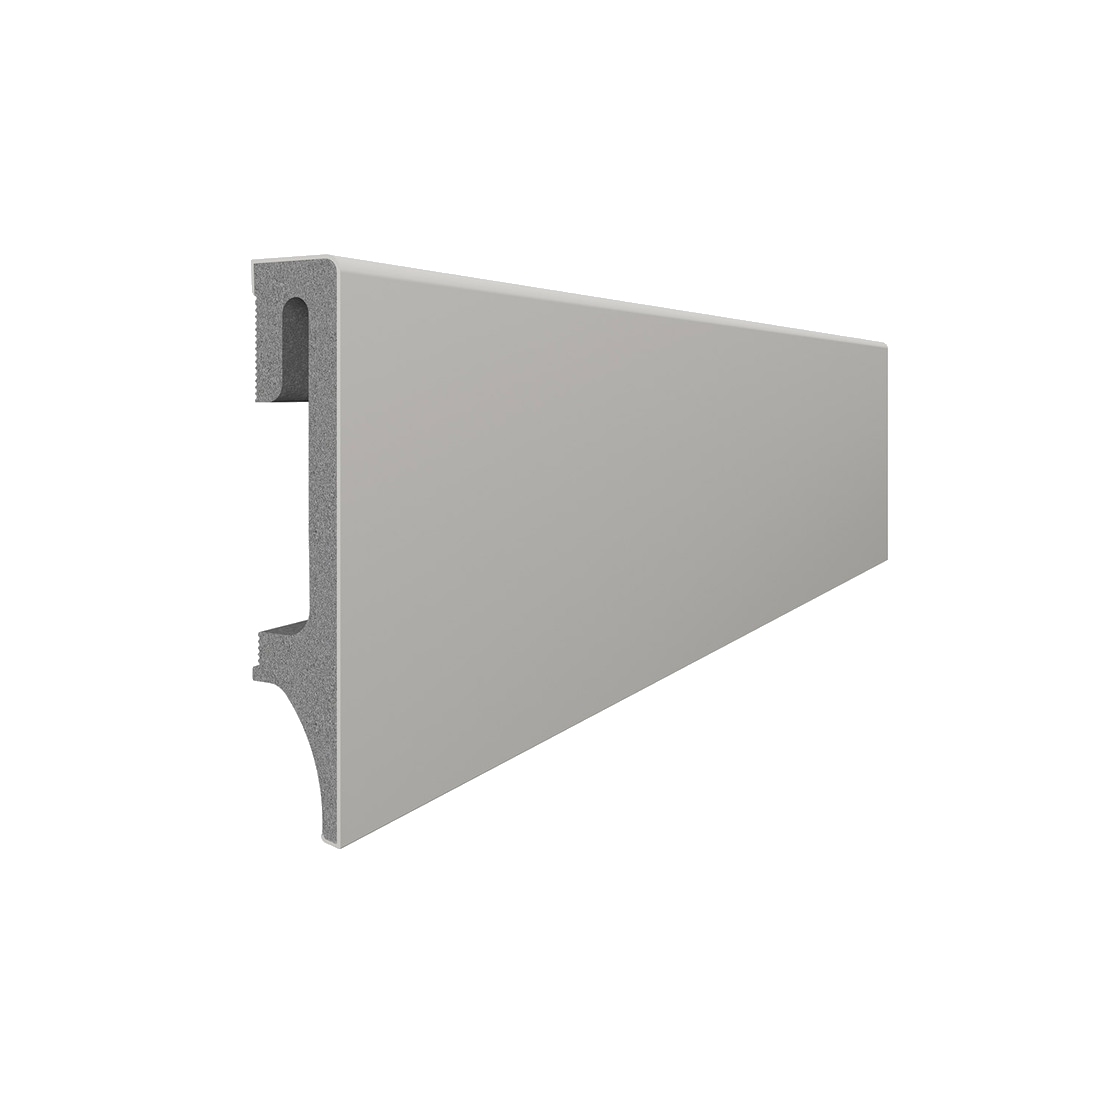 Vox Skirting Board 80mm -  Warm Grey